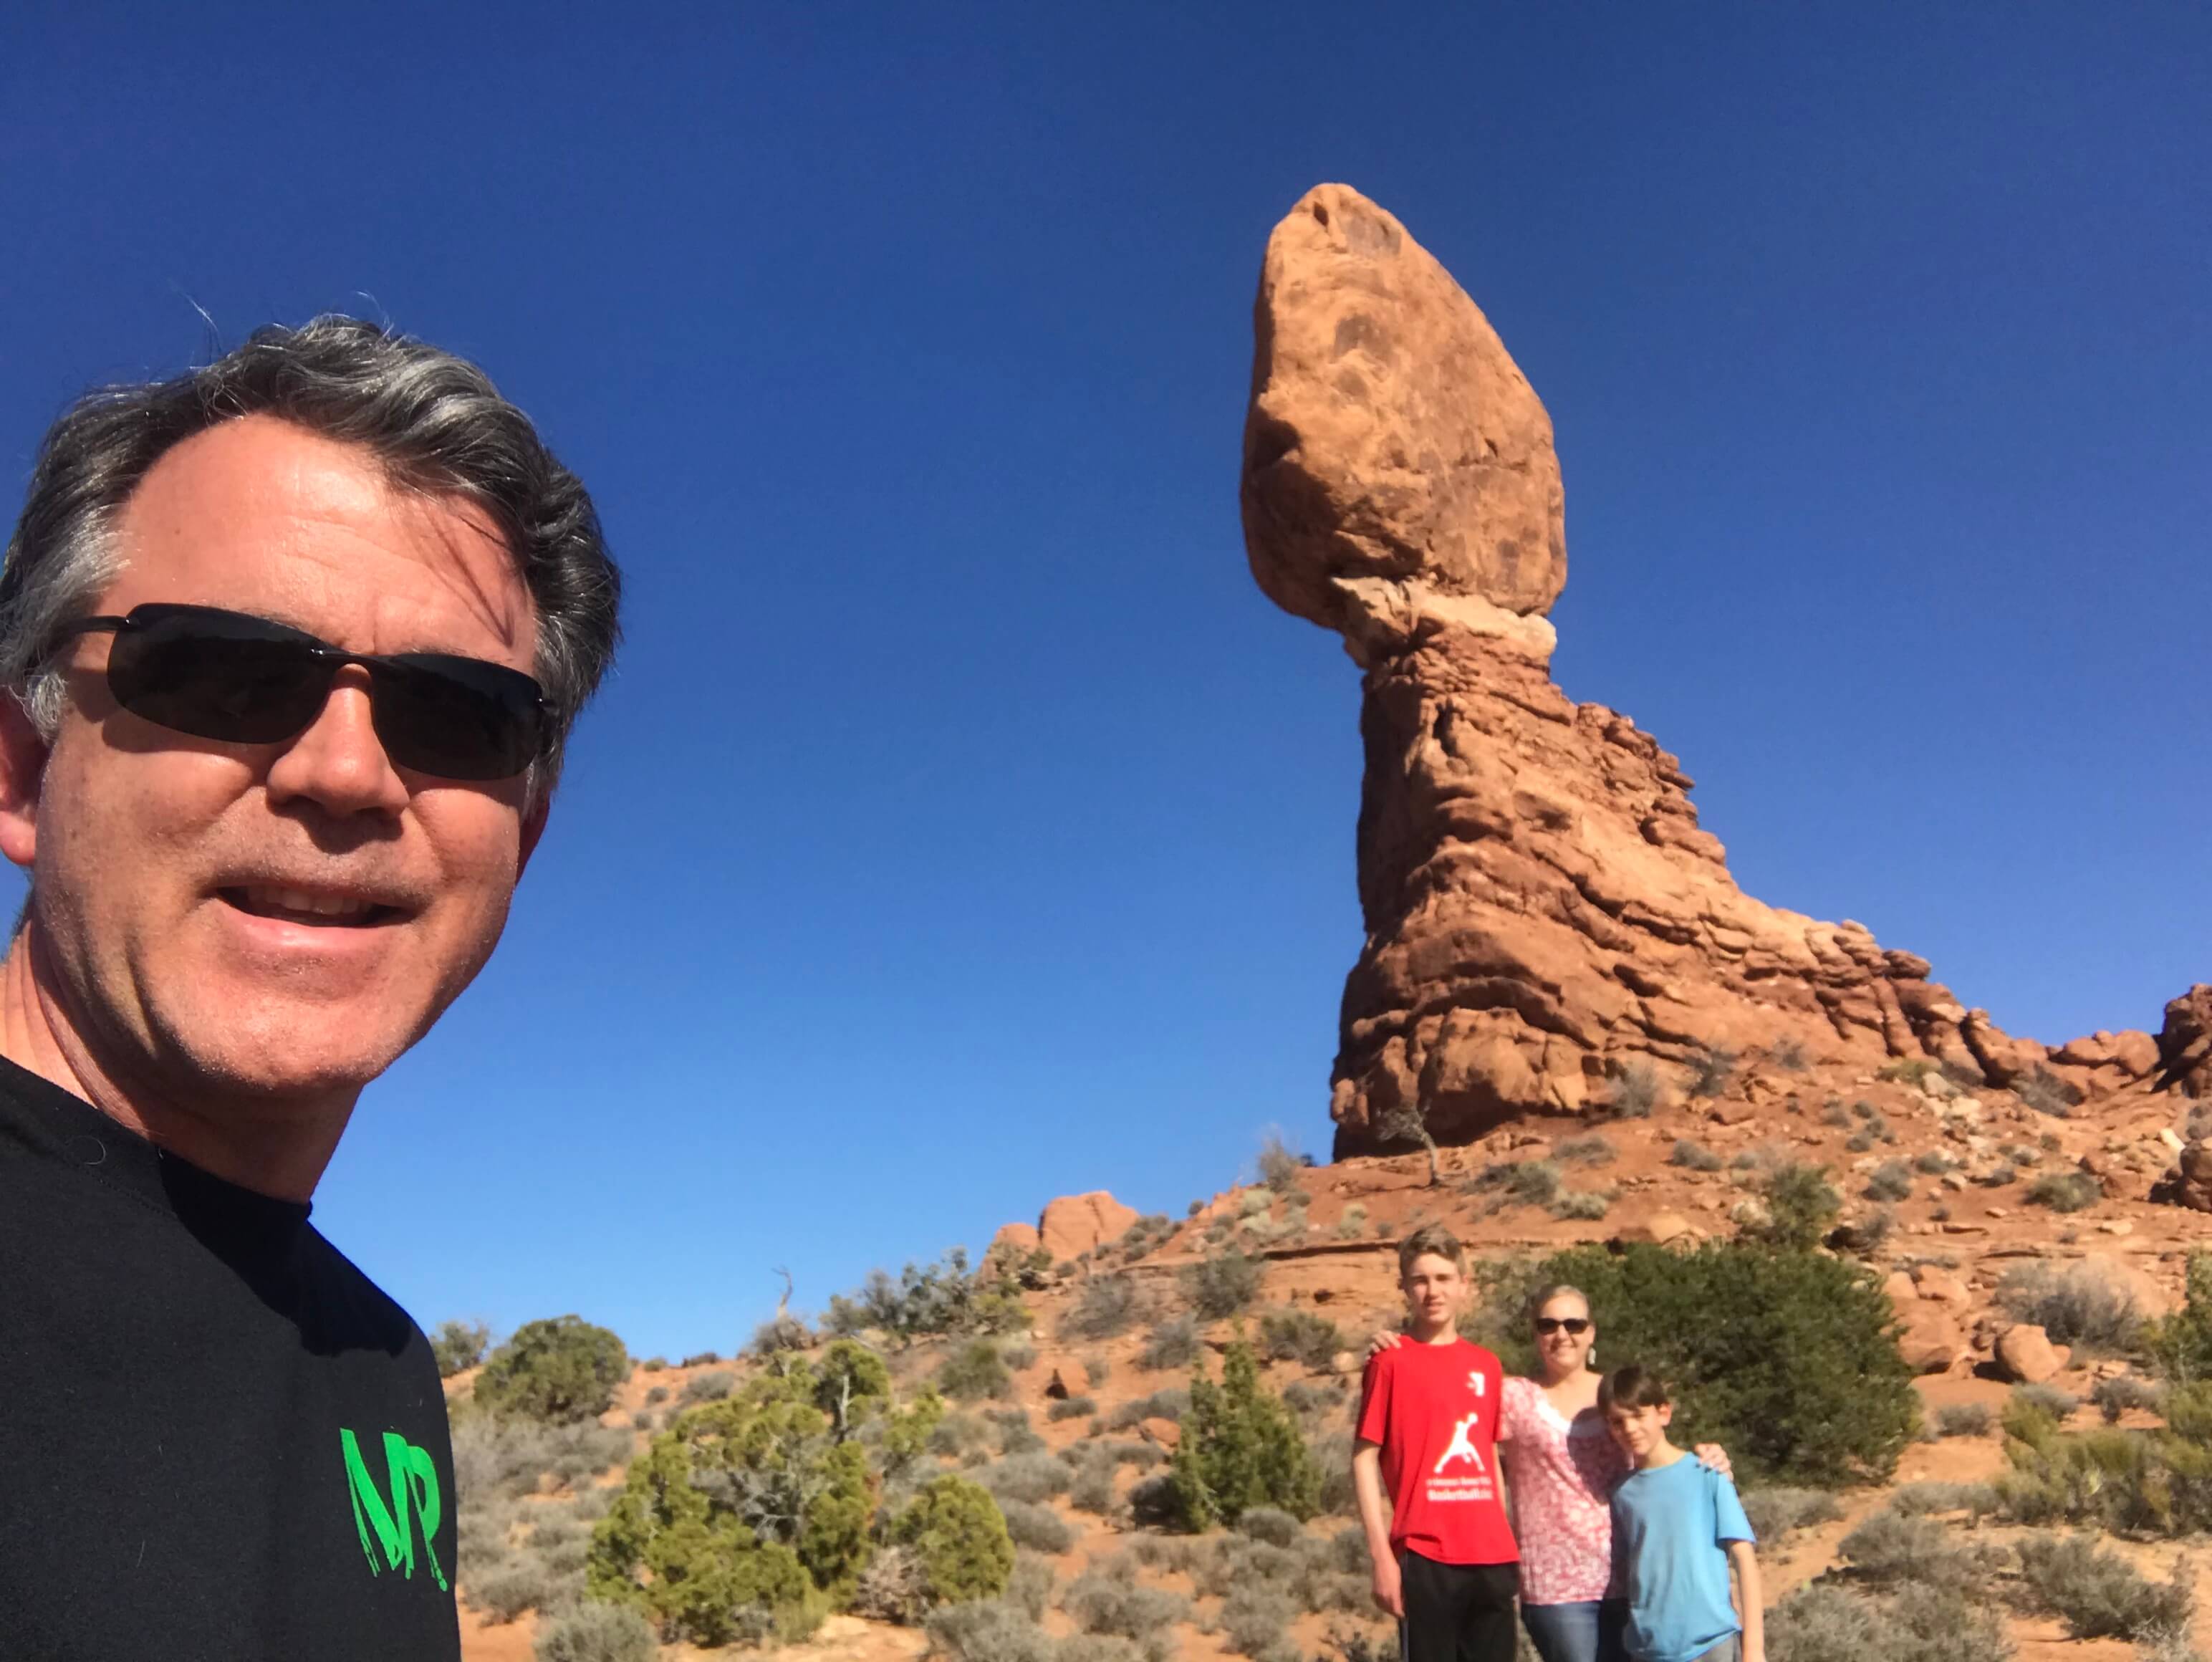 Family Hike at Balanced Rock